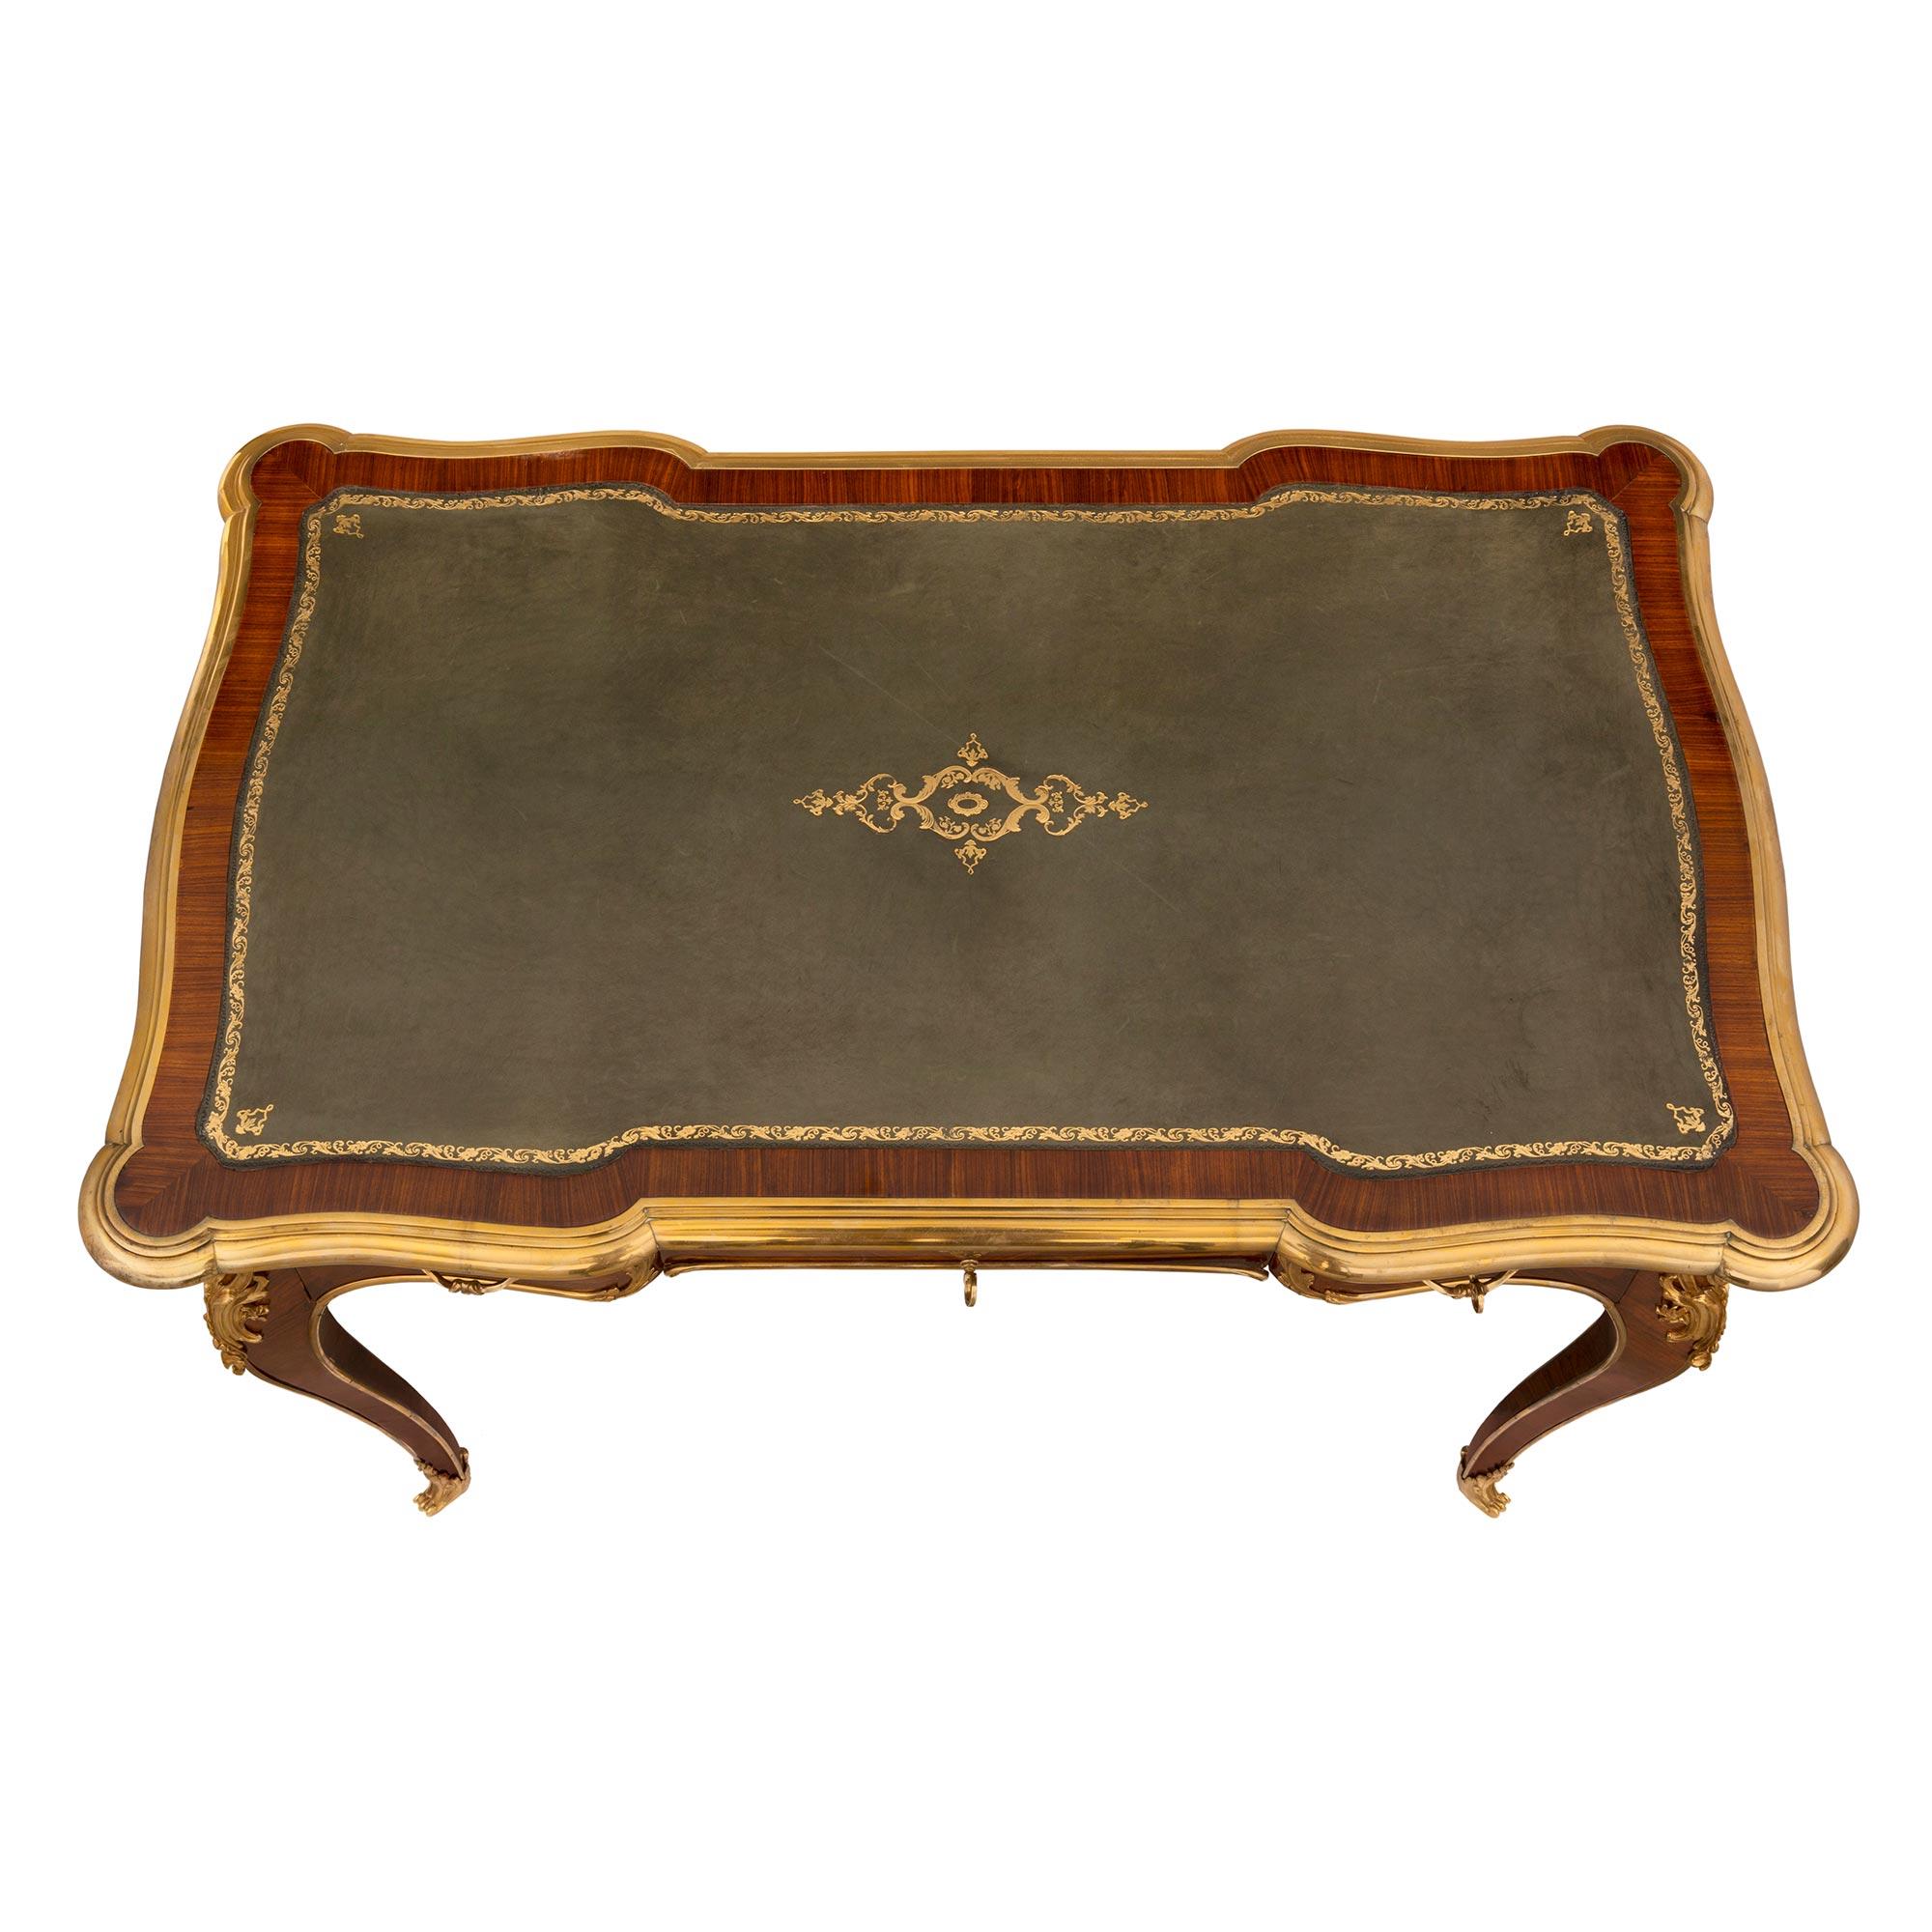 Magnifique bureau plat de style Louis XV du milieu du XIXe siècle, en bois royal et bronze doré. Le bureau est surélevé par d'élégants pieds cabriole avec des sabots en bronze doré finement ajustés et enveloppés d'un joli motif feuillagé. De